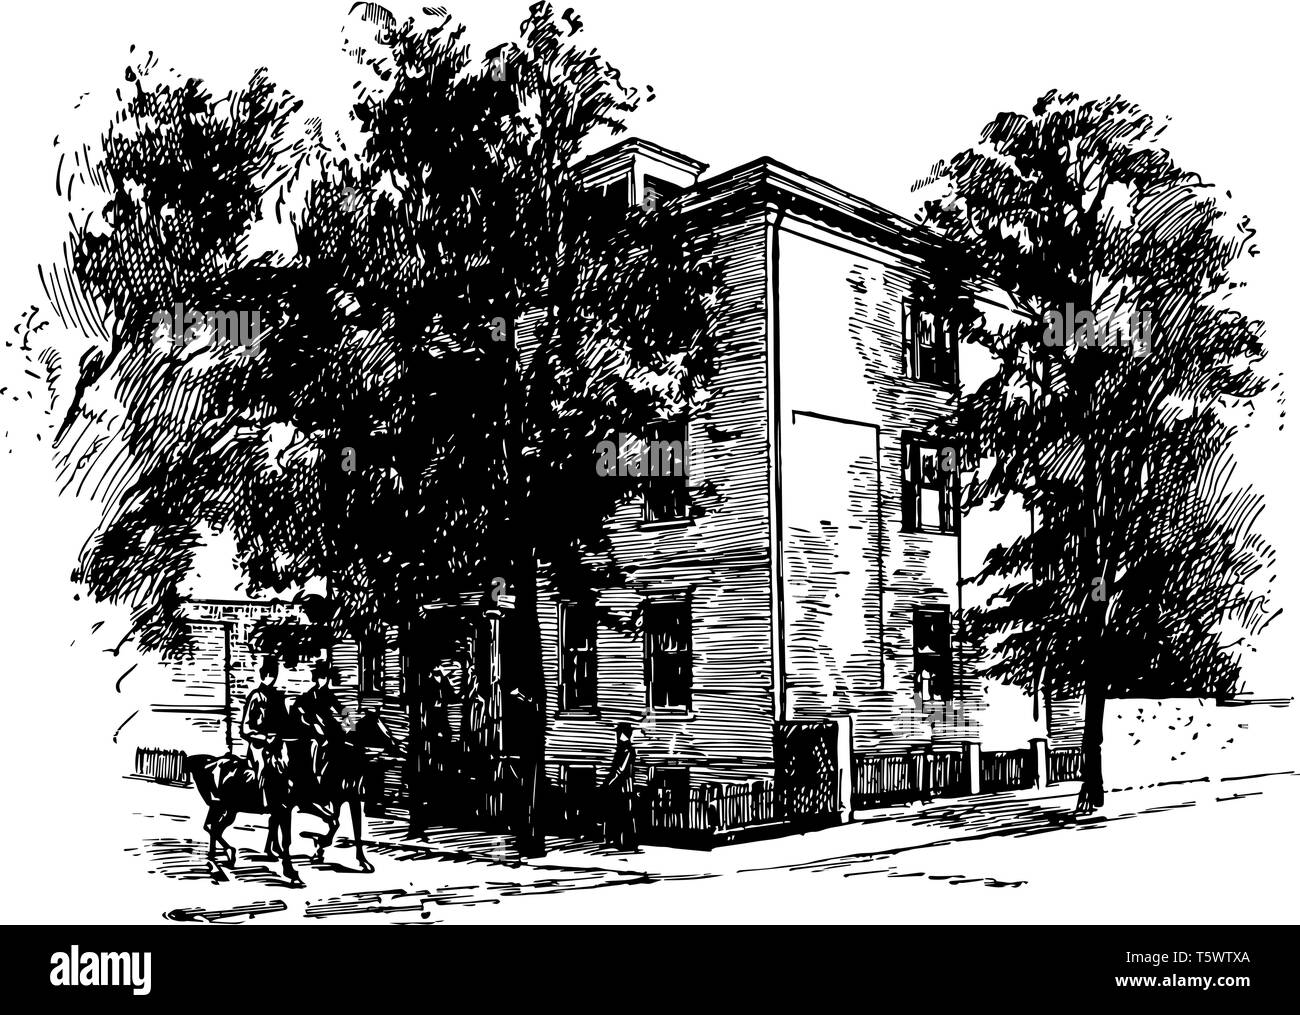 La imagen muestra el hogar de Jefferson Davis en Richmond. La casa es absorbido por los árboles. La casa tiene cercas de piquetes. Dos Equestrians están pasando de Ilustración del Vector